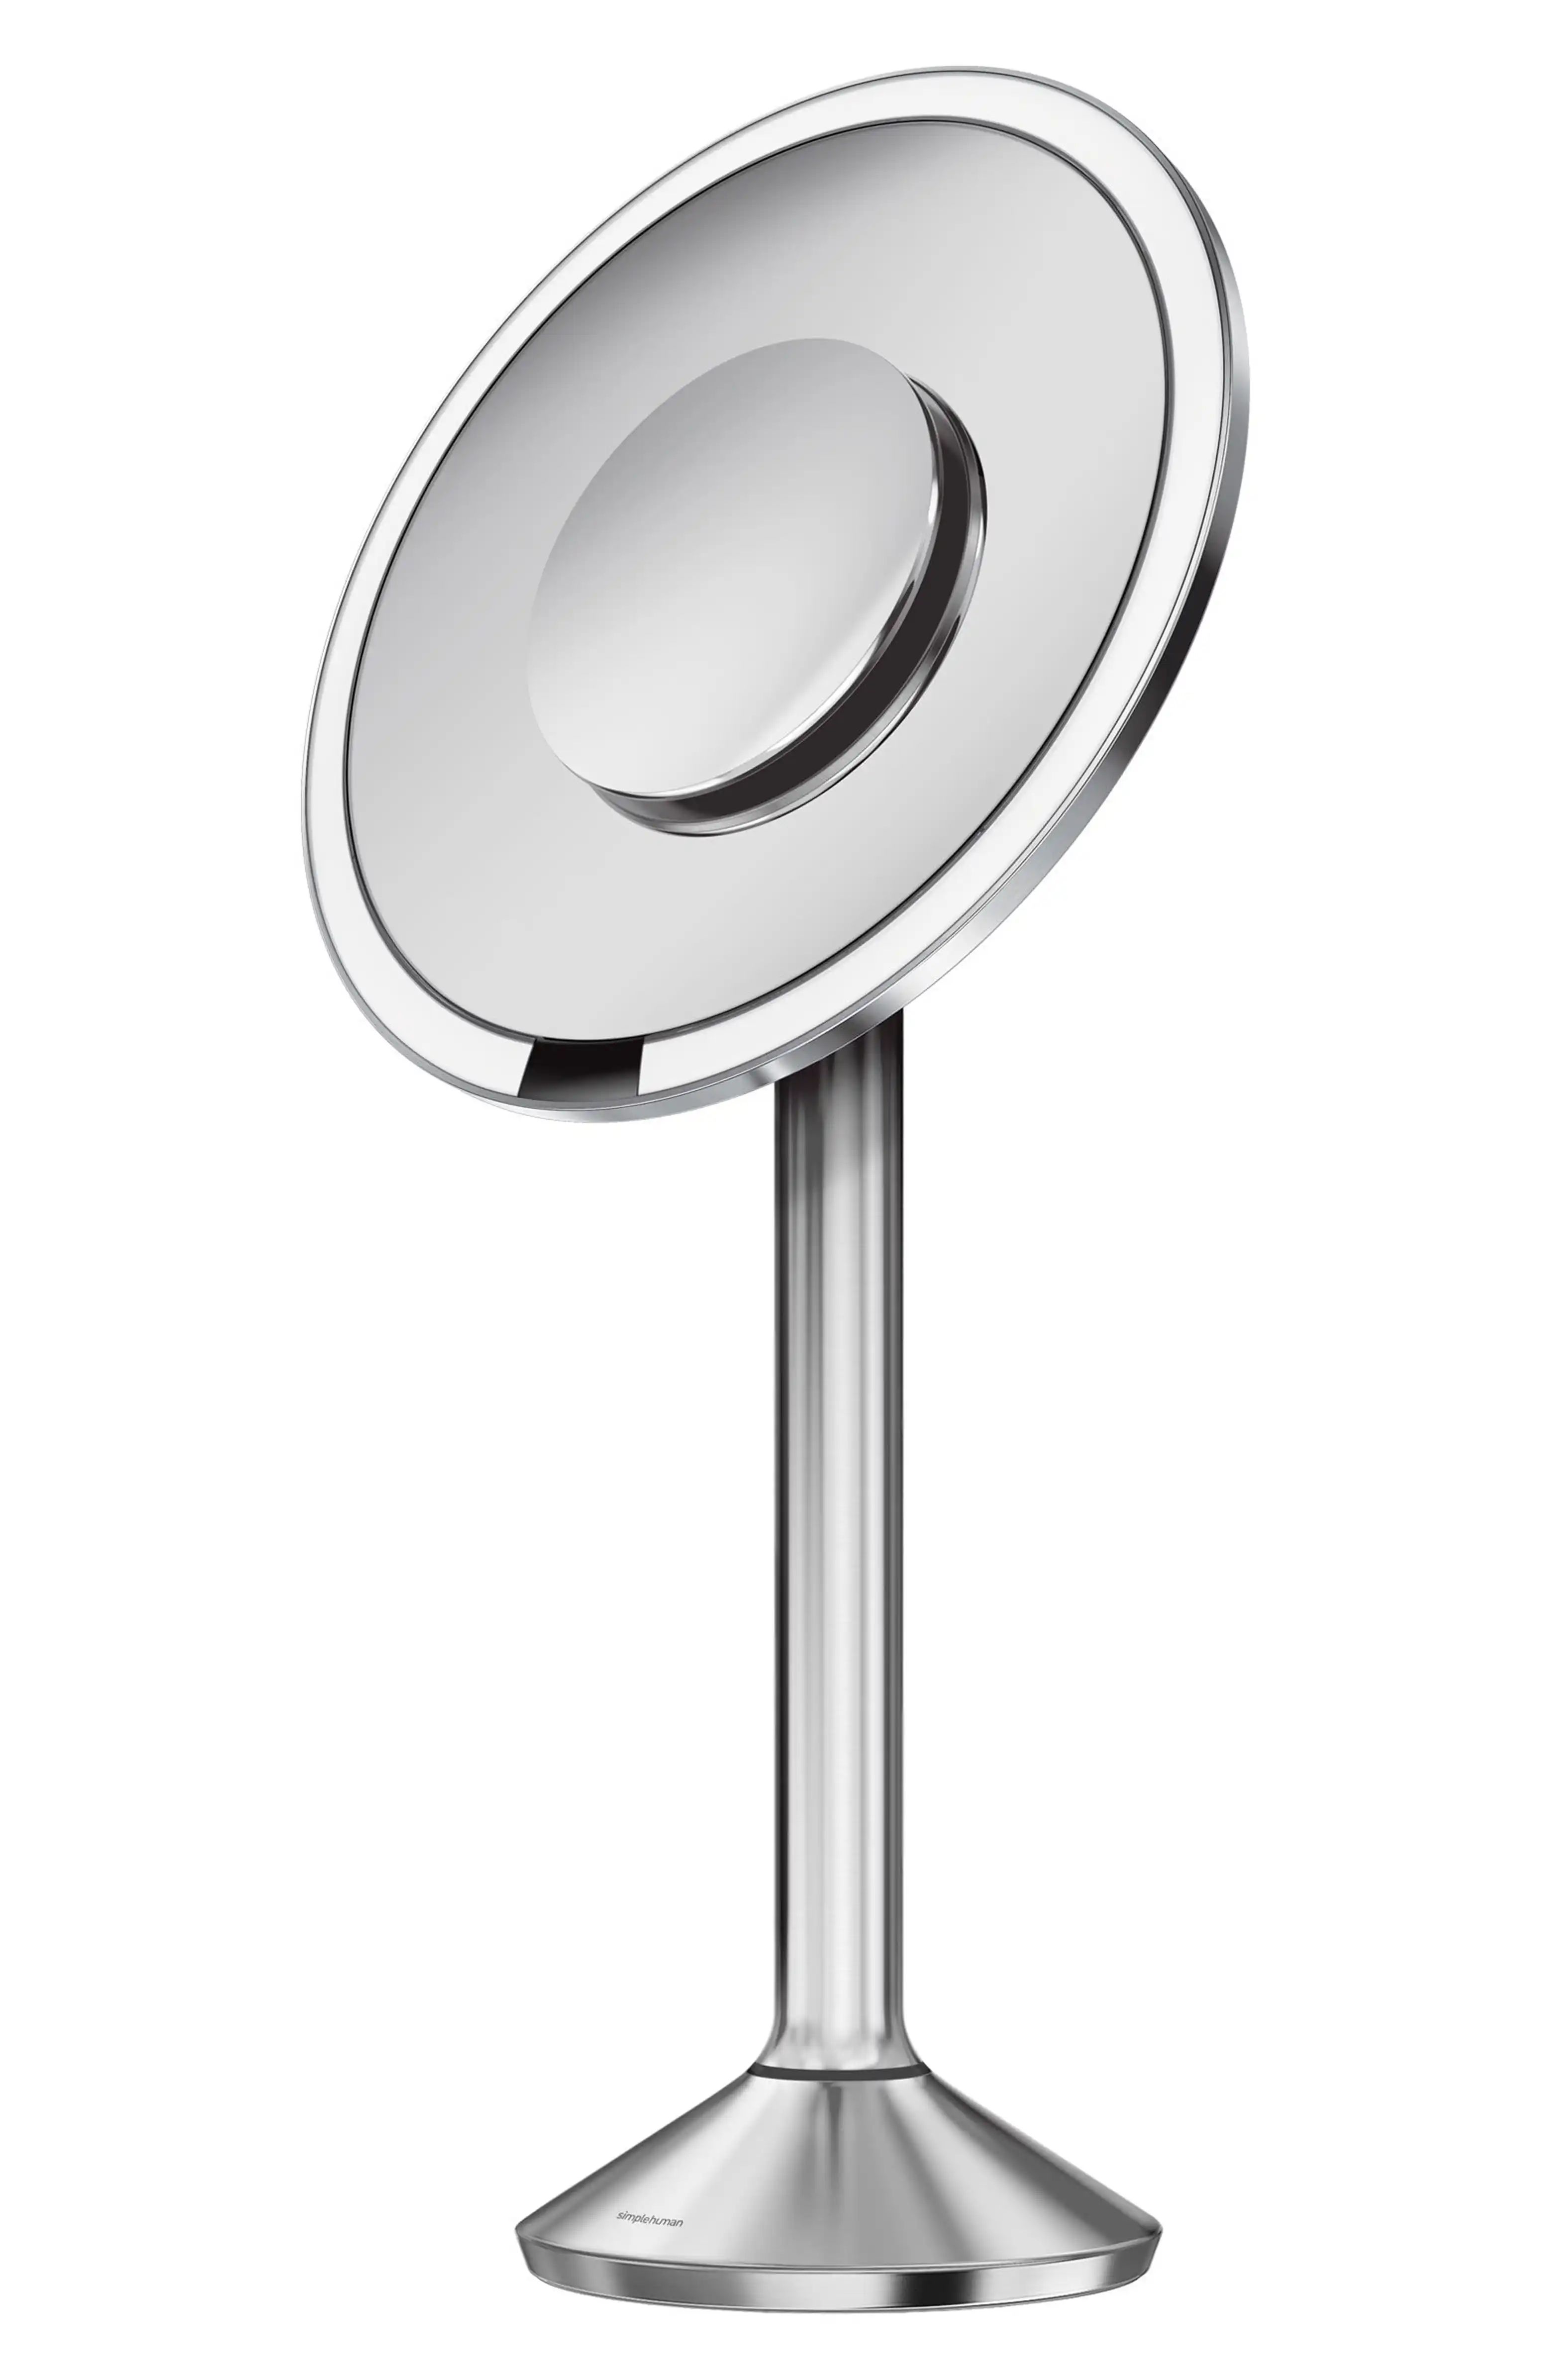 8 Inch Round Sensor Mirror Pro | Nordstrom